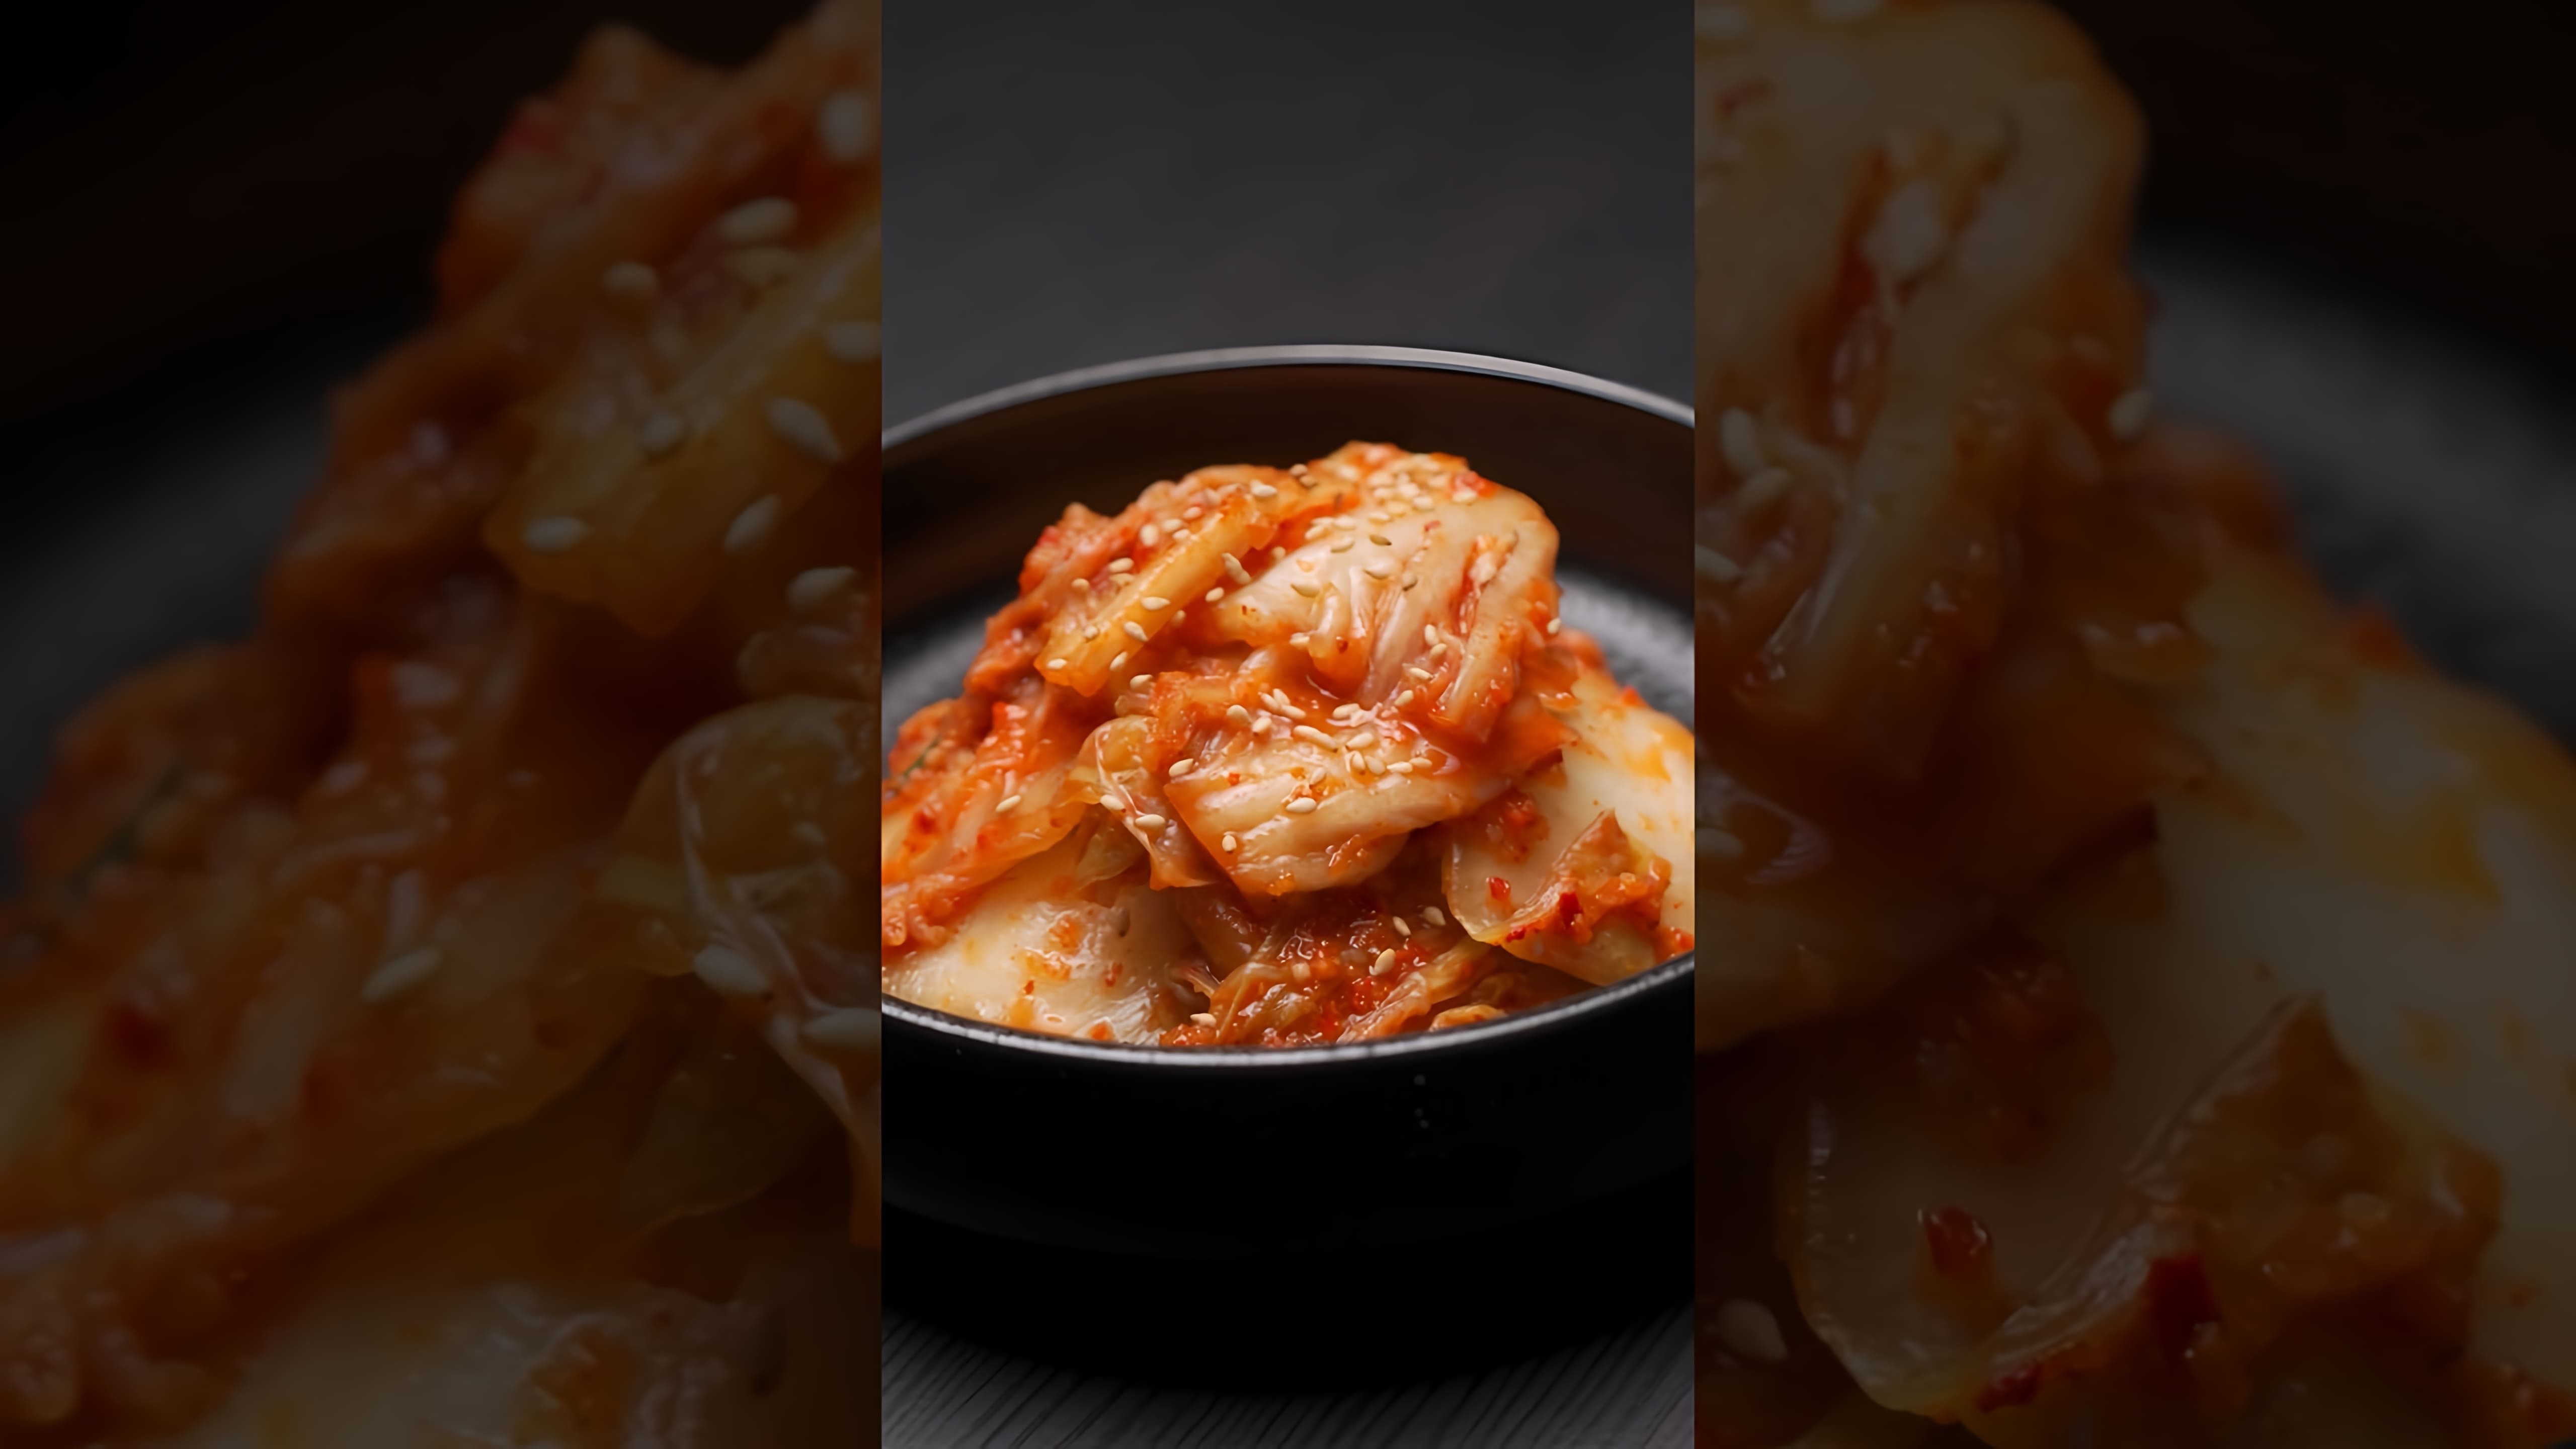 КИМЧИ - это традиционное корейское блюдо, которое готовится из овощей и ферментируется в течение нескольких дней